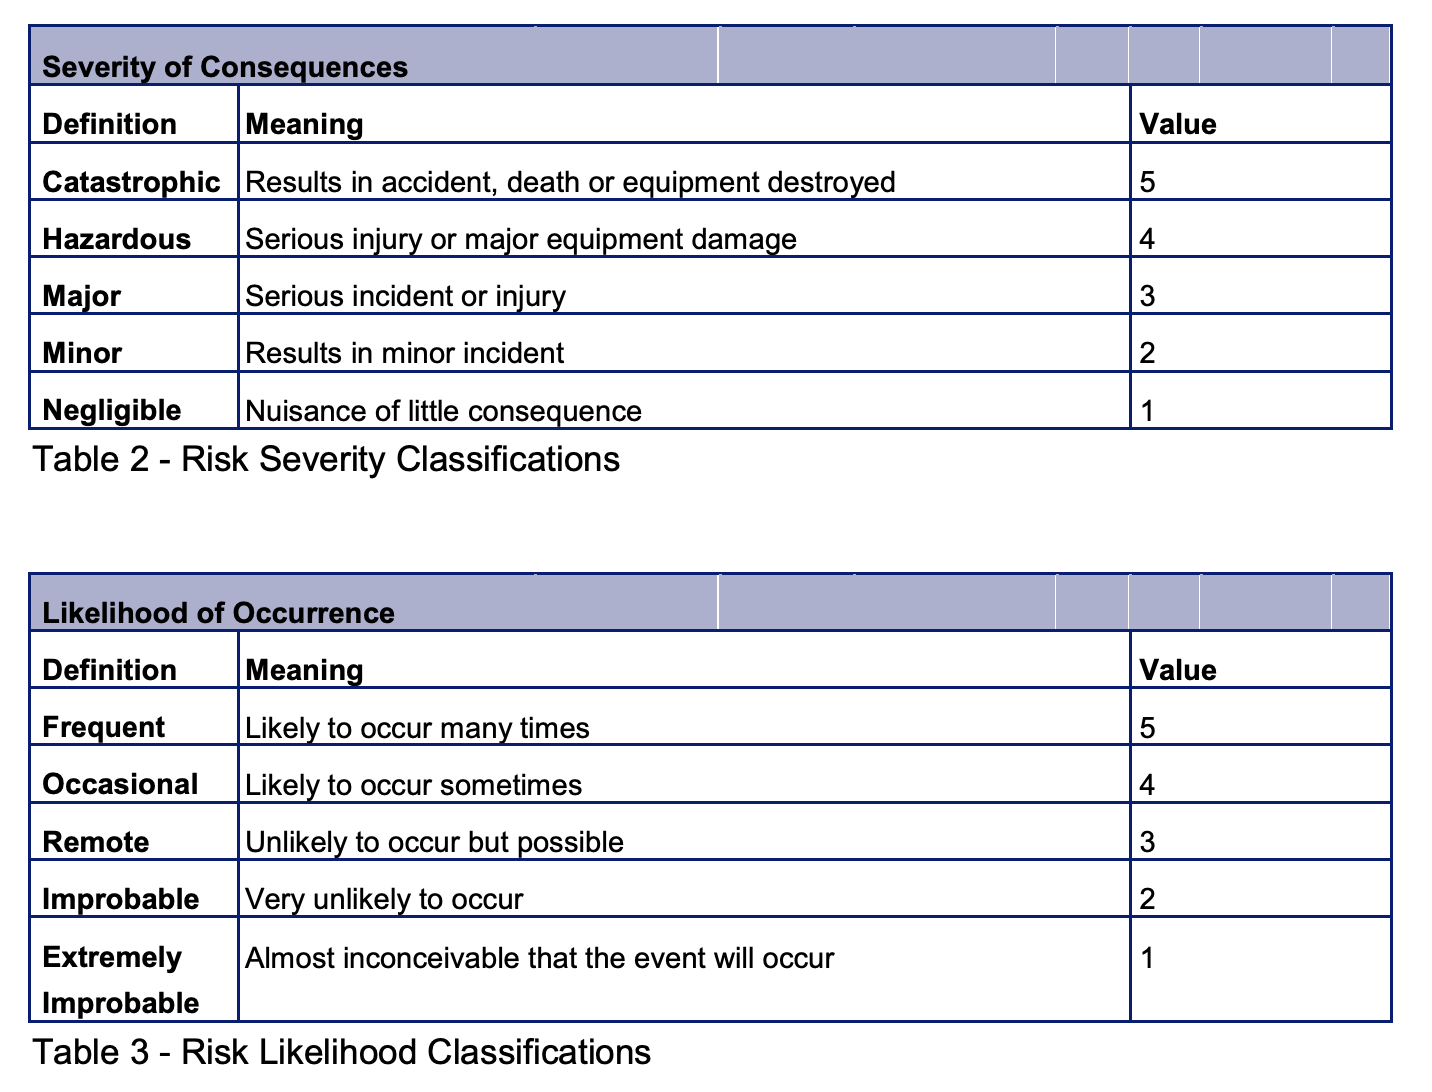 Table 3 - Risk Likelihood Classifications